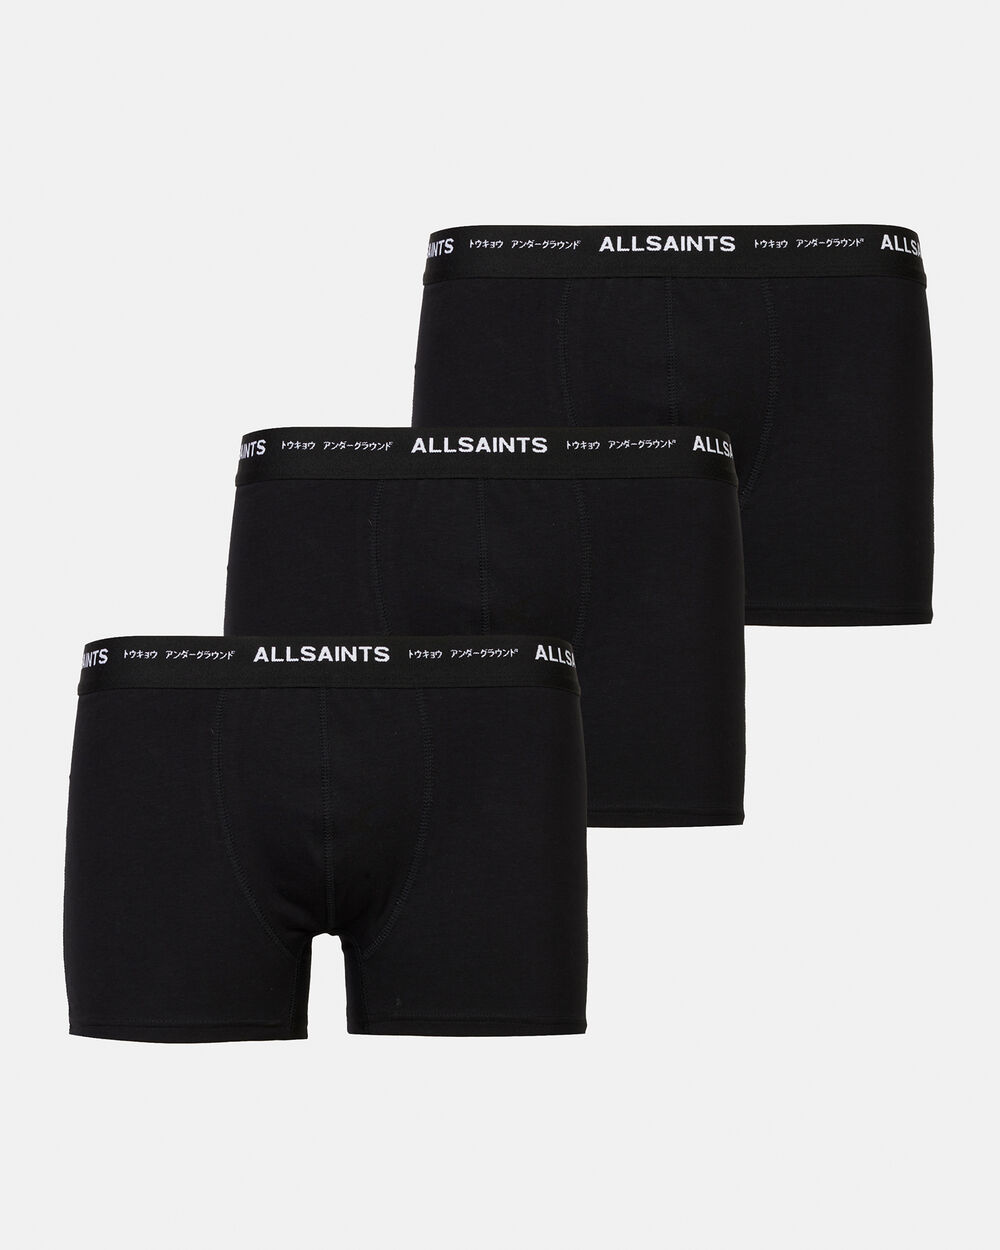 цена Набор из 3 боксеров с логотипом Underground AllSaints, черный/черный/черный